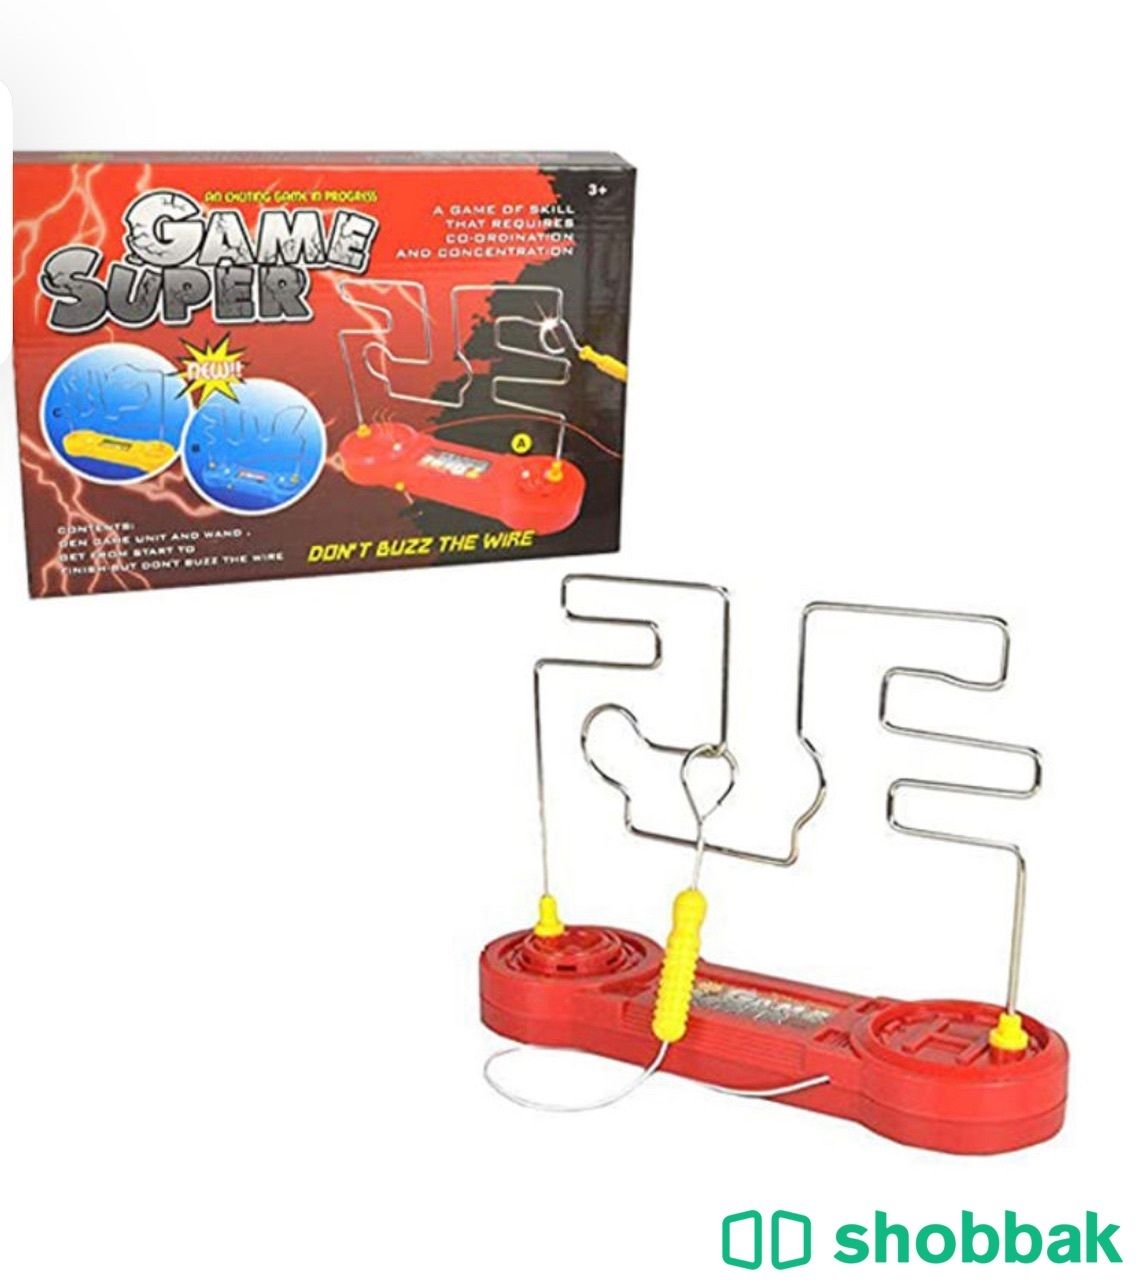 لعبة دونت باز مصنوعة من البلاستيك المتين عالي الجودة متعدد الألوان لعمر 4 سنوات  Shobbak Saudi Arabia